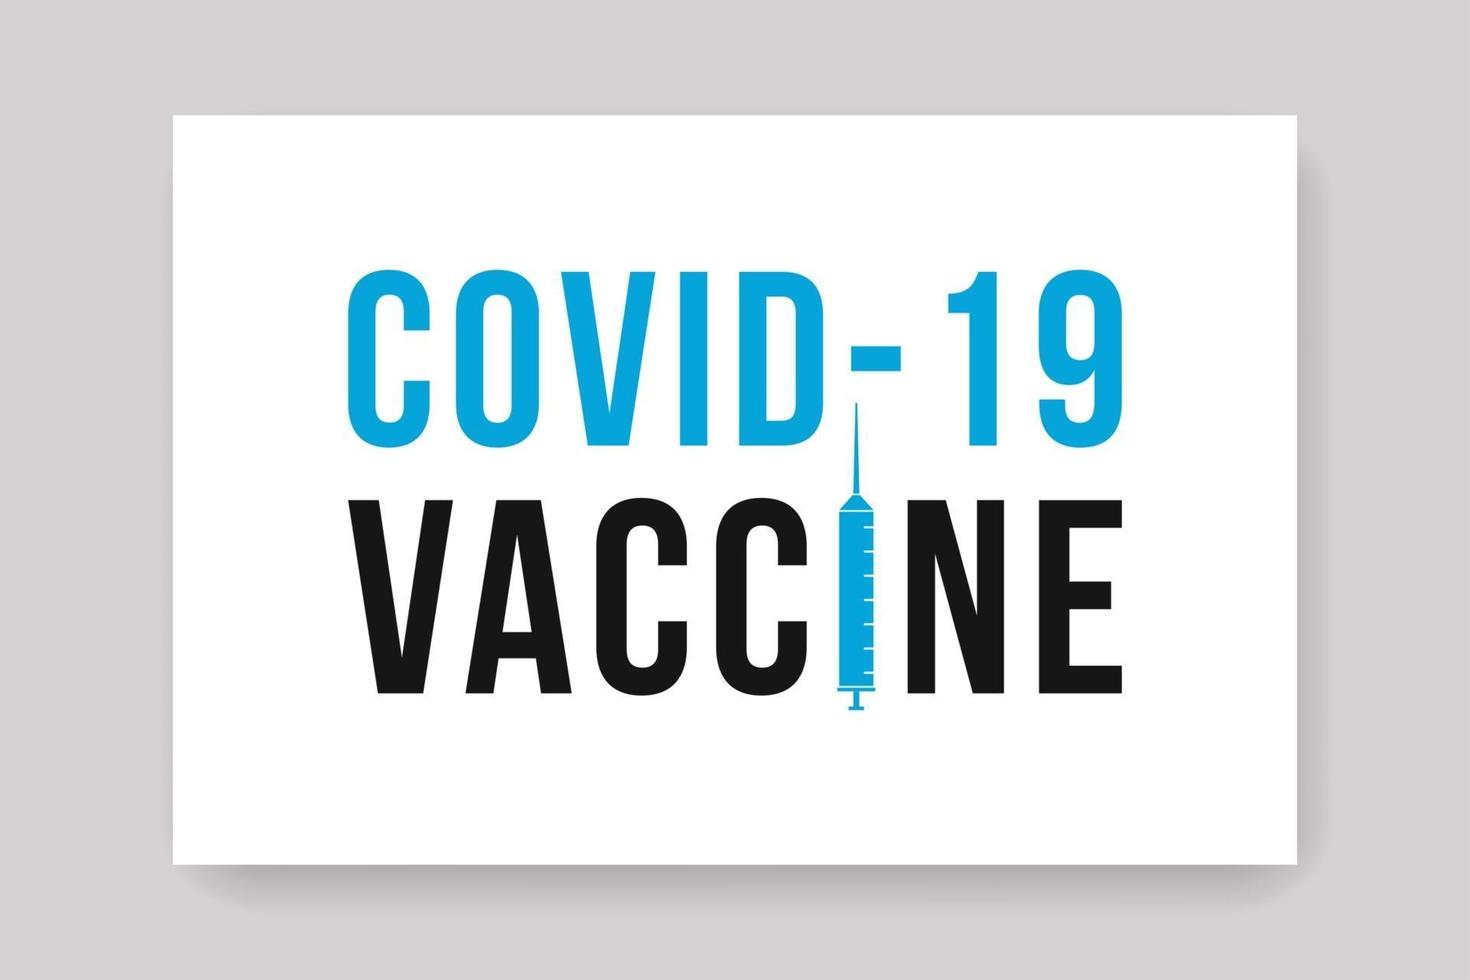 bannière de vaccin covid 19 vecteur